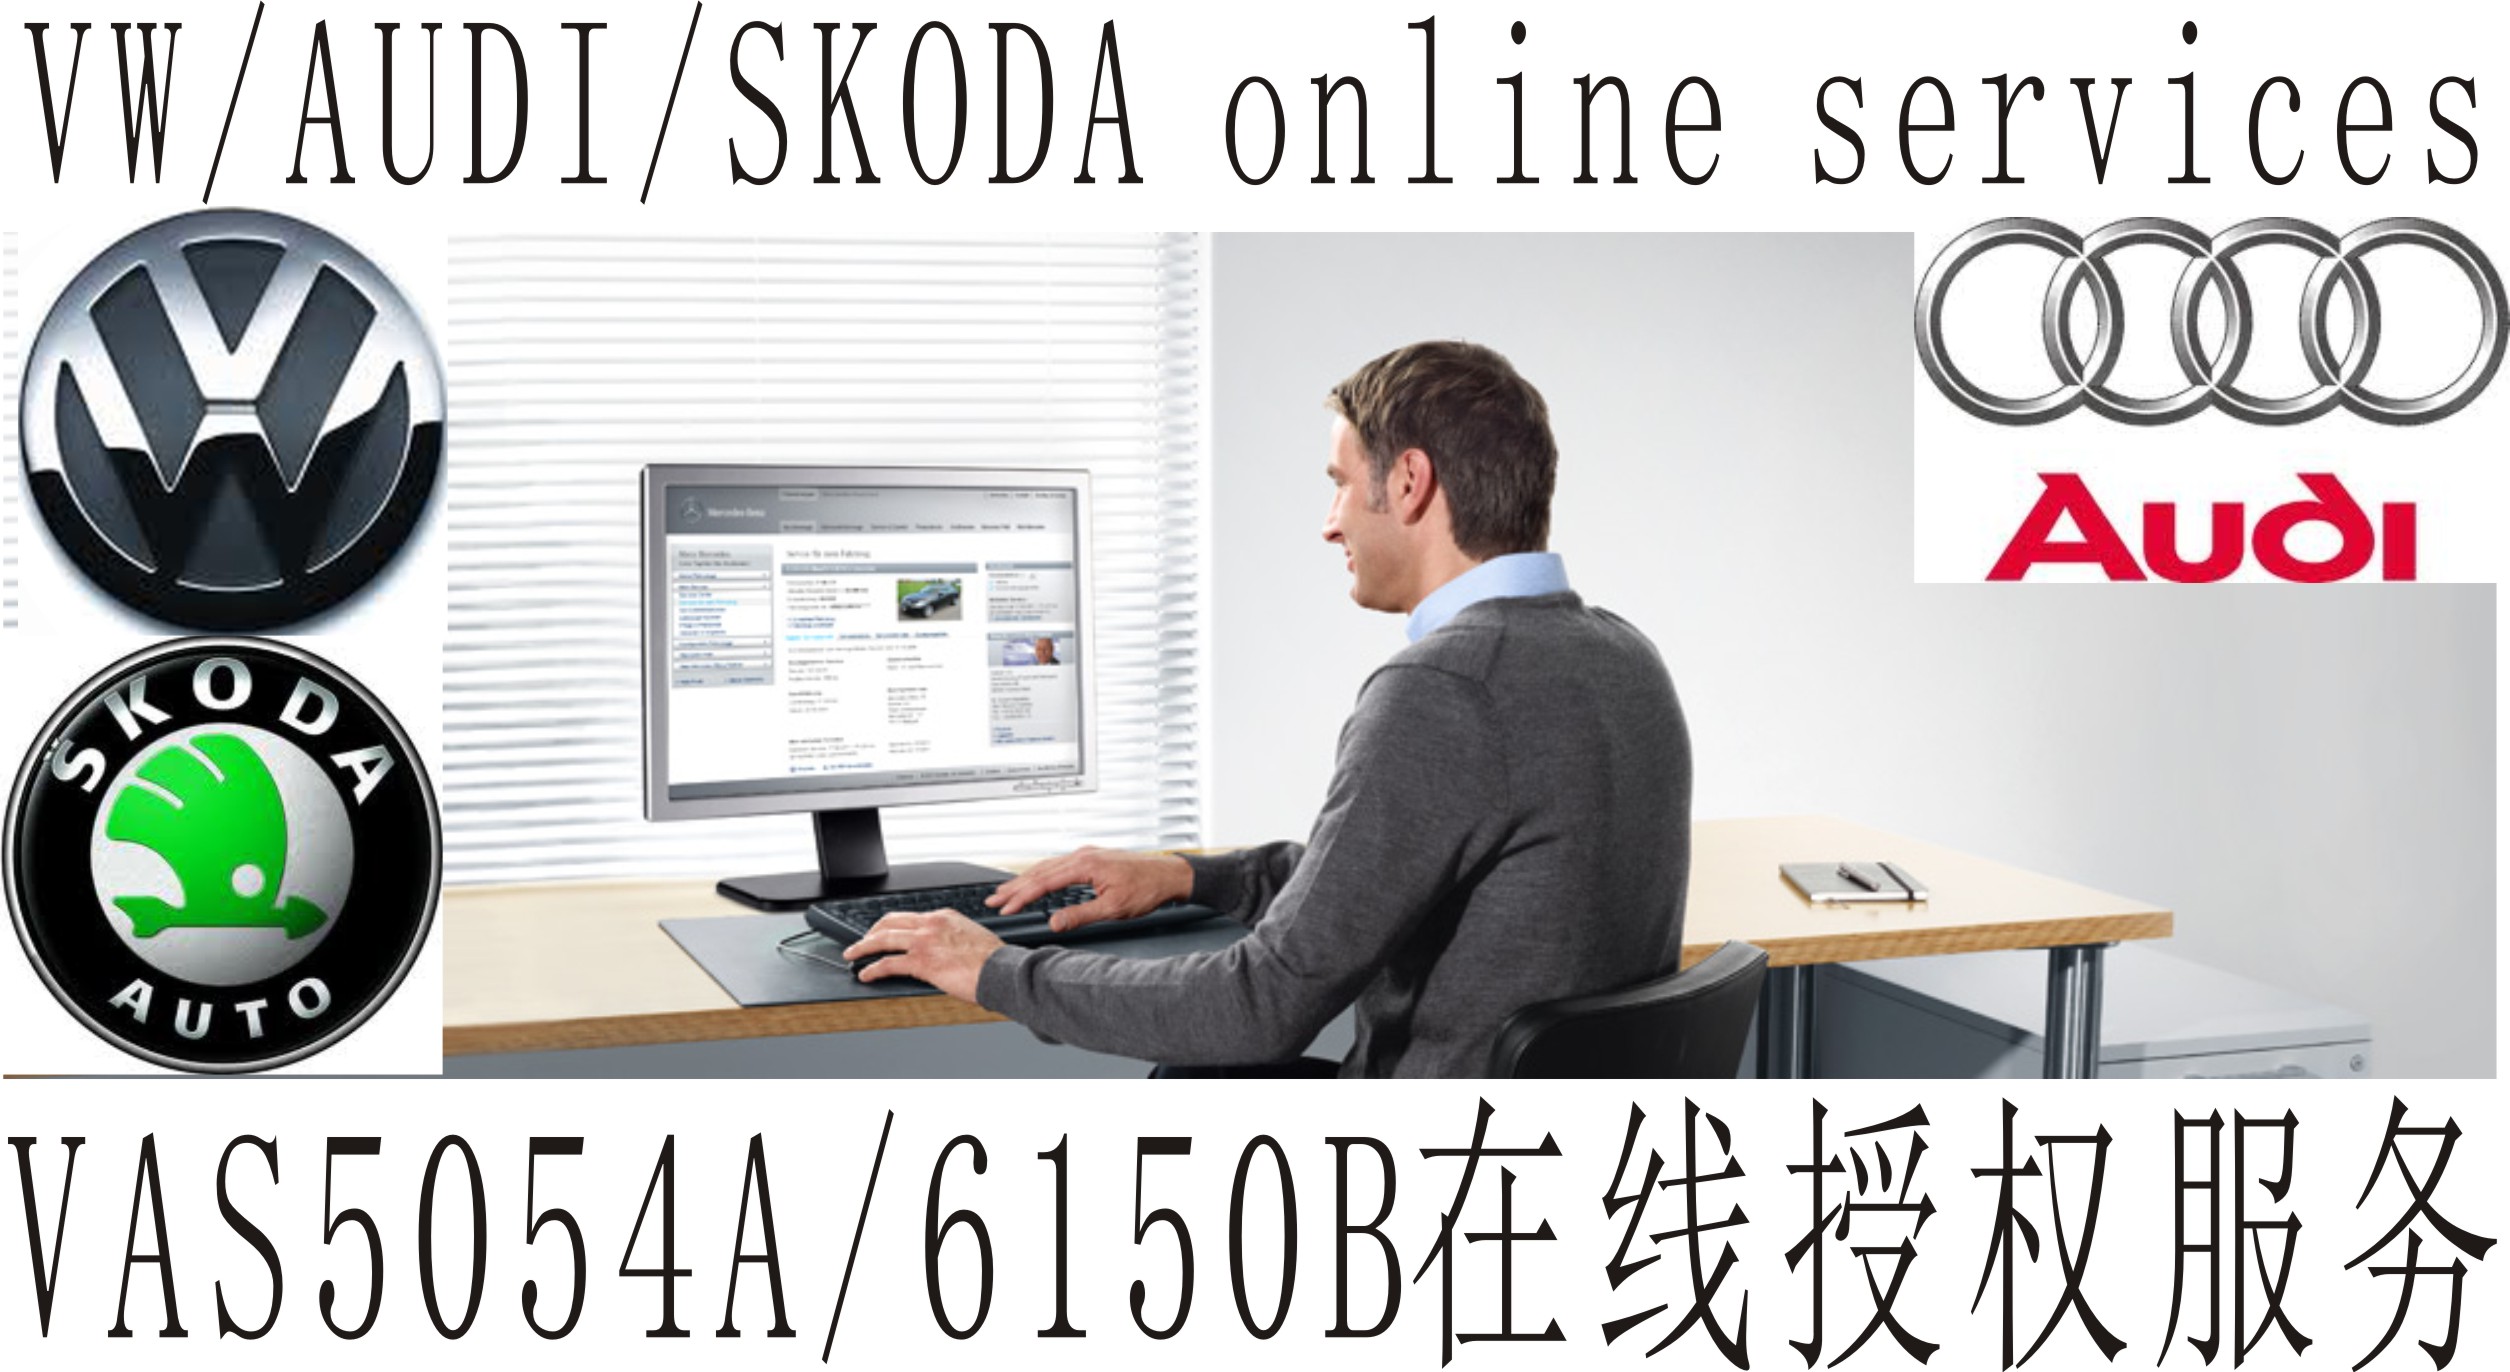 大众奥迪ODIS 3.0.3/5054A最新软件安装/授权/在线/ODIS3.03软件